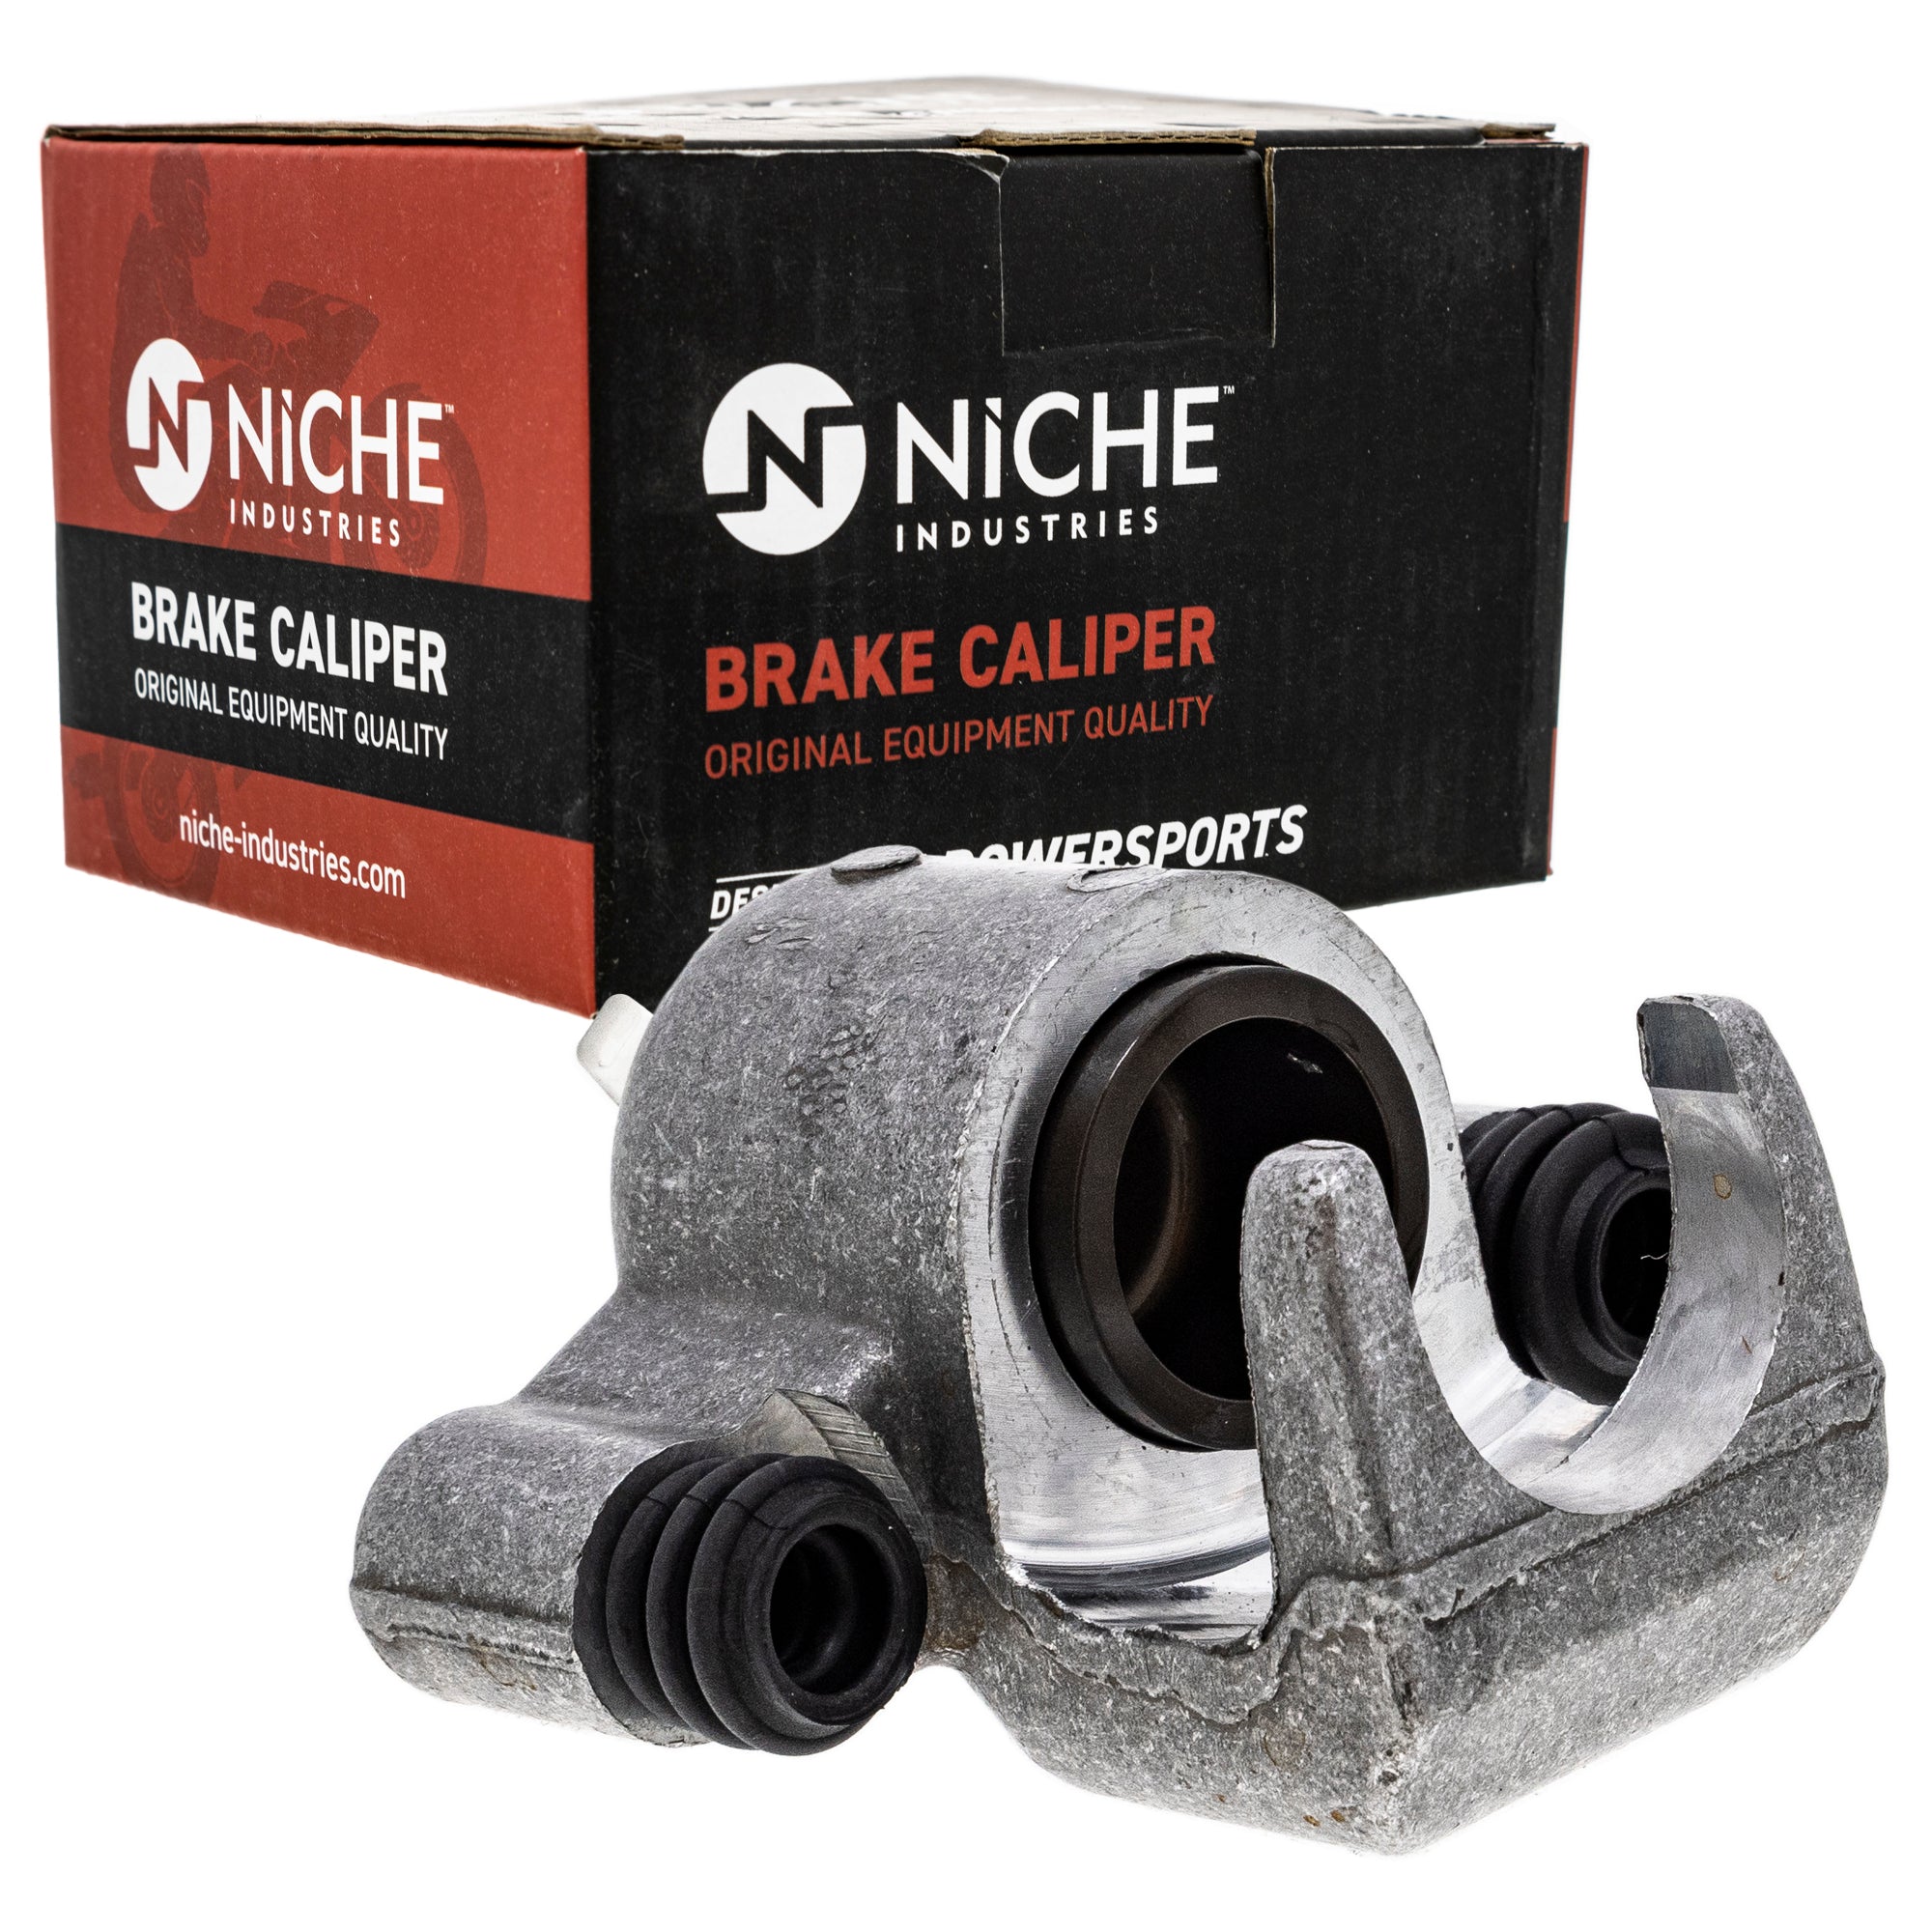 NICHE MK1001043 Brake Caliper Kit